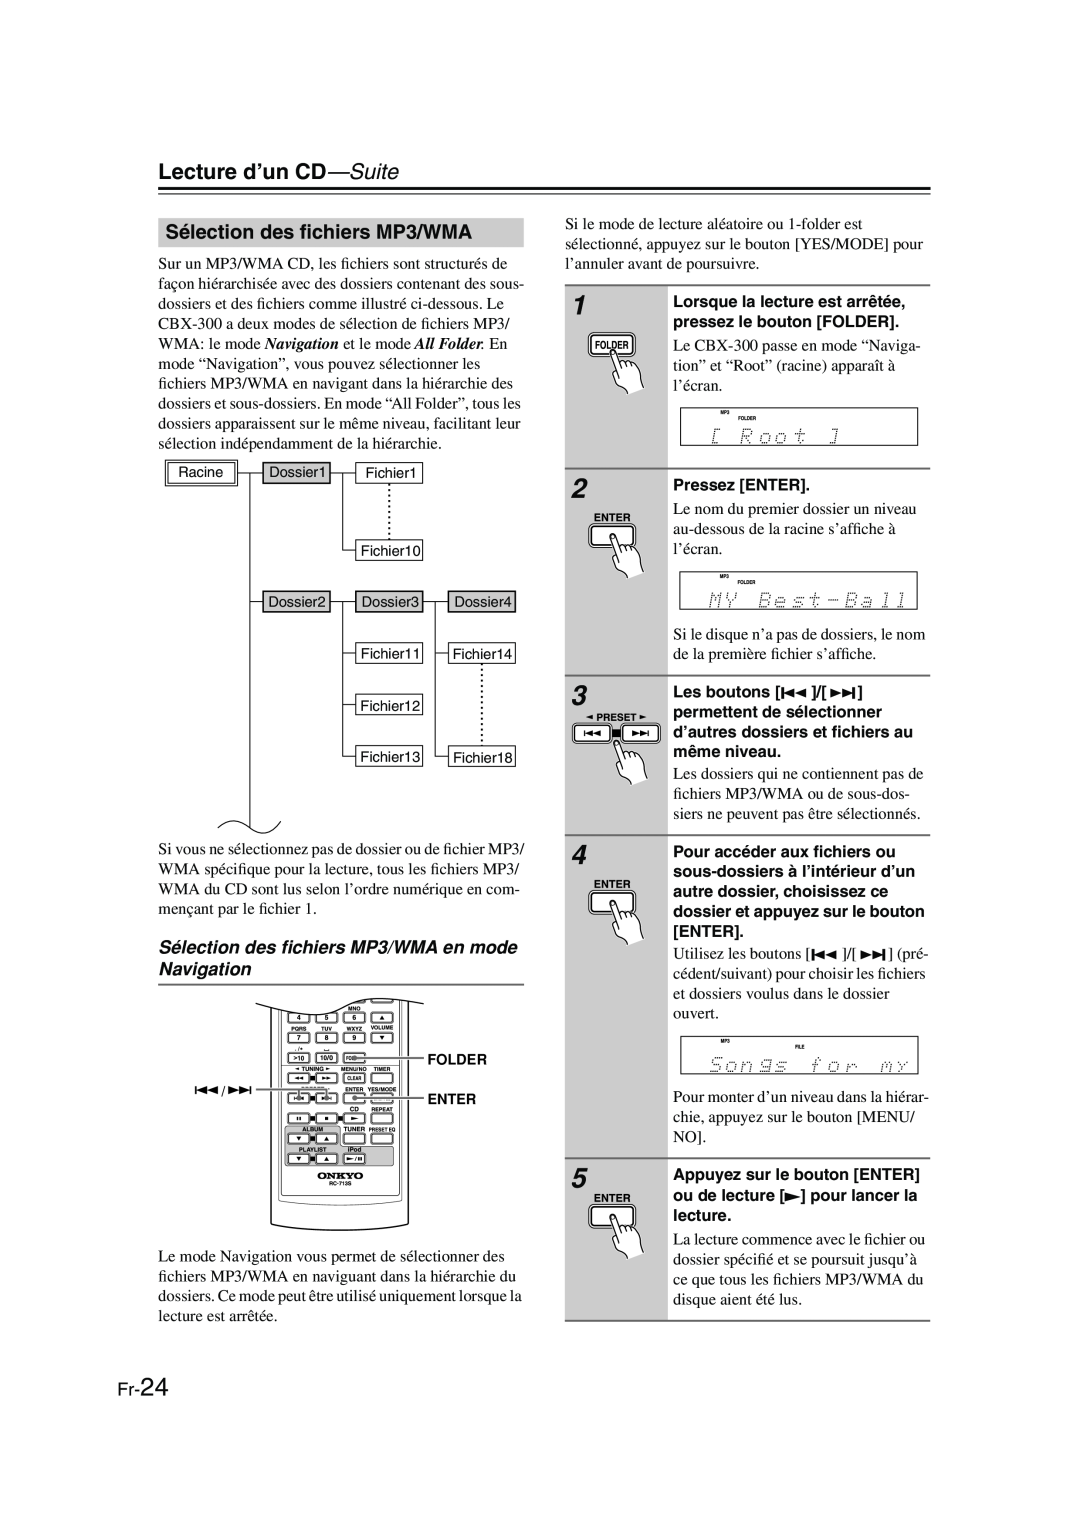 Onkyo CBX-300 instruction manual Sélection des ﬁchiers MP3/WMA en mode Navigation, Fr-24, Lecture d’un CD—Suite 